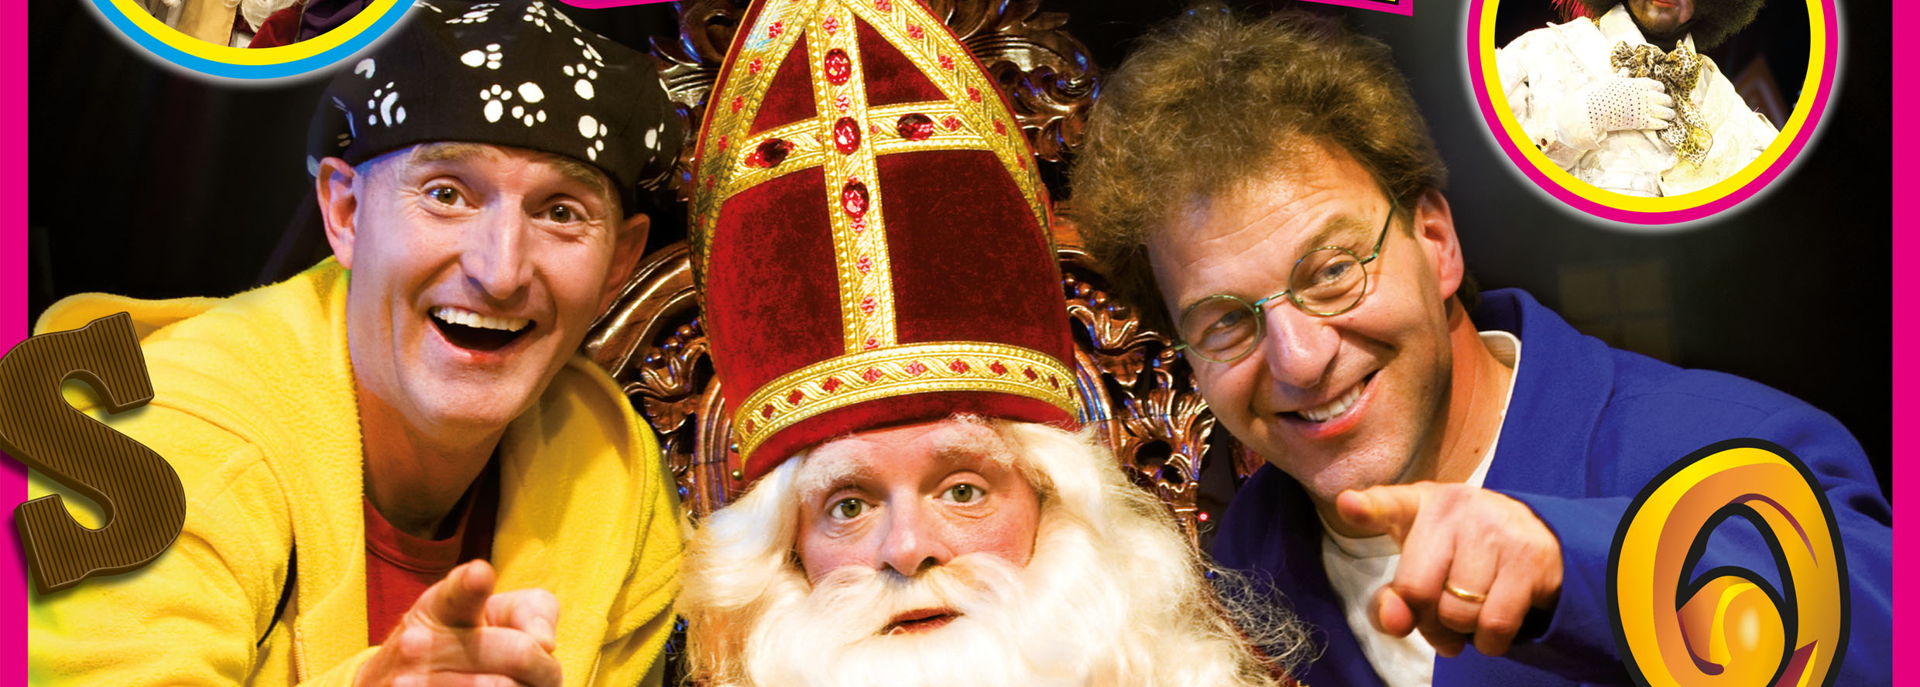 Sinterklaas is dit jaar helemaal Bling Bling dankzij zijn persoonlijke assistent. Toch merken Ernst en Bobbie dat er iets vreemds met hem aan de hand is. Help jij ze om Sinterklaas te redden? Een doldwaas avontuur vol grappen en liedjes.